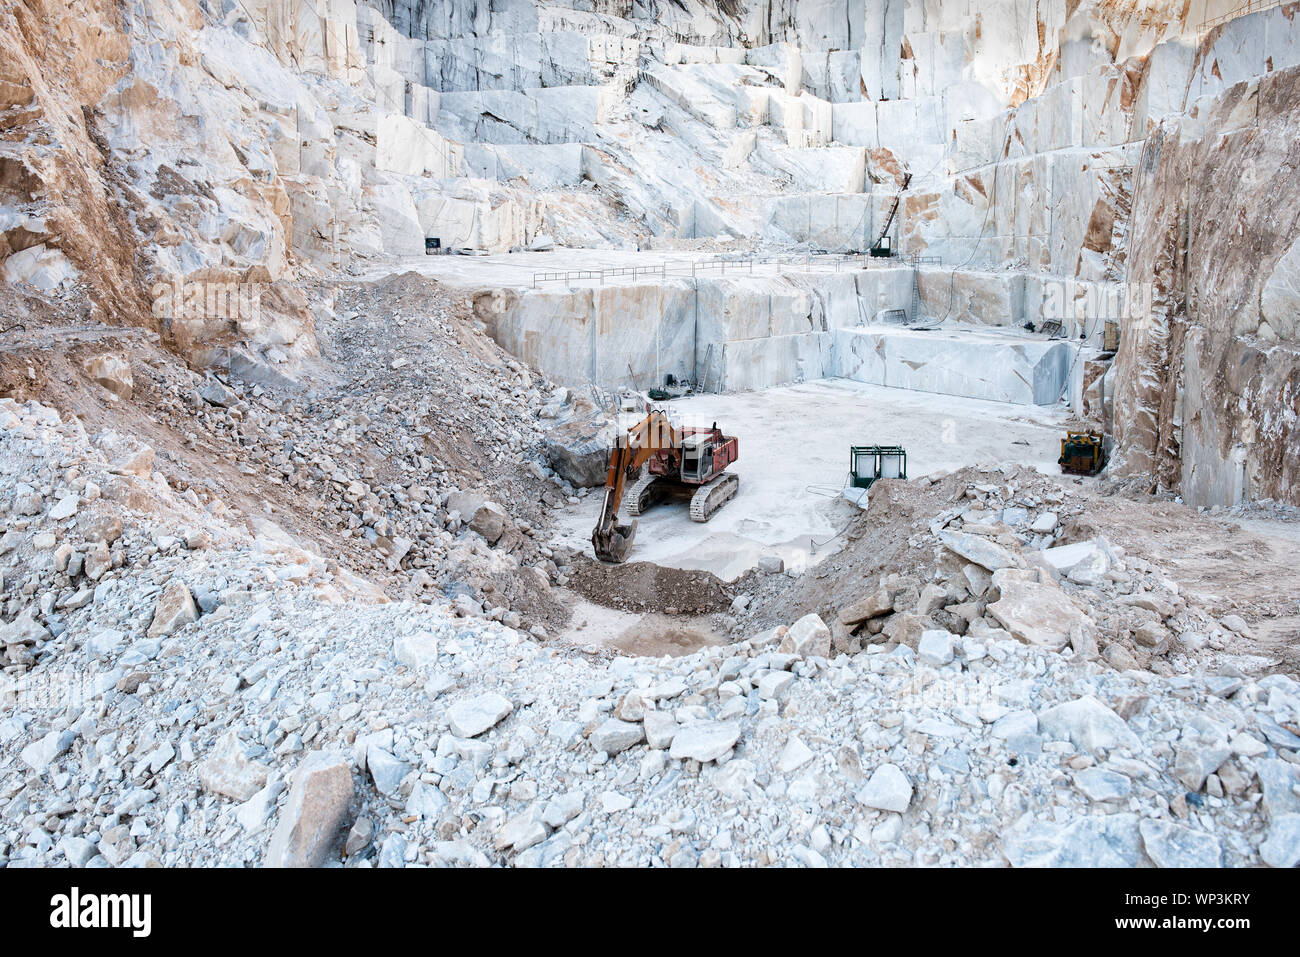 Bagger oder Digger in einem Tagebau Grube für Weißer Carrara Marmor zeigen große Steinblöcke aus dem Berghang in der Toskana, Italien, Schnitt Stockfoto